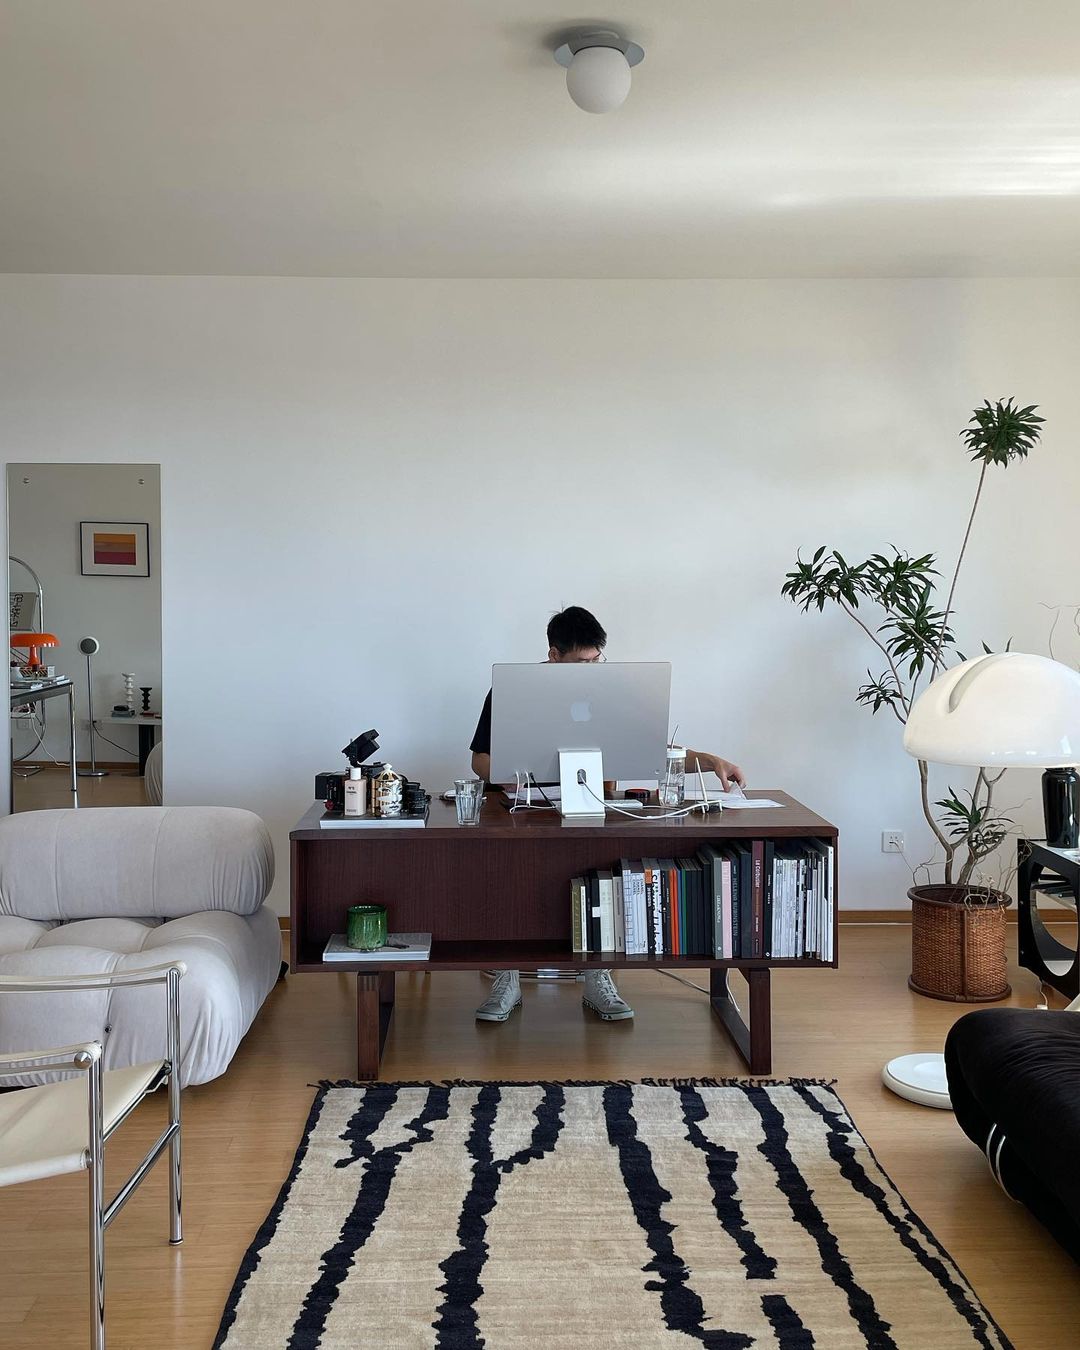 Décor Inspiration | At Home With: Savi of @savislook